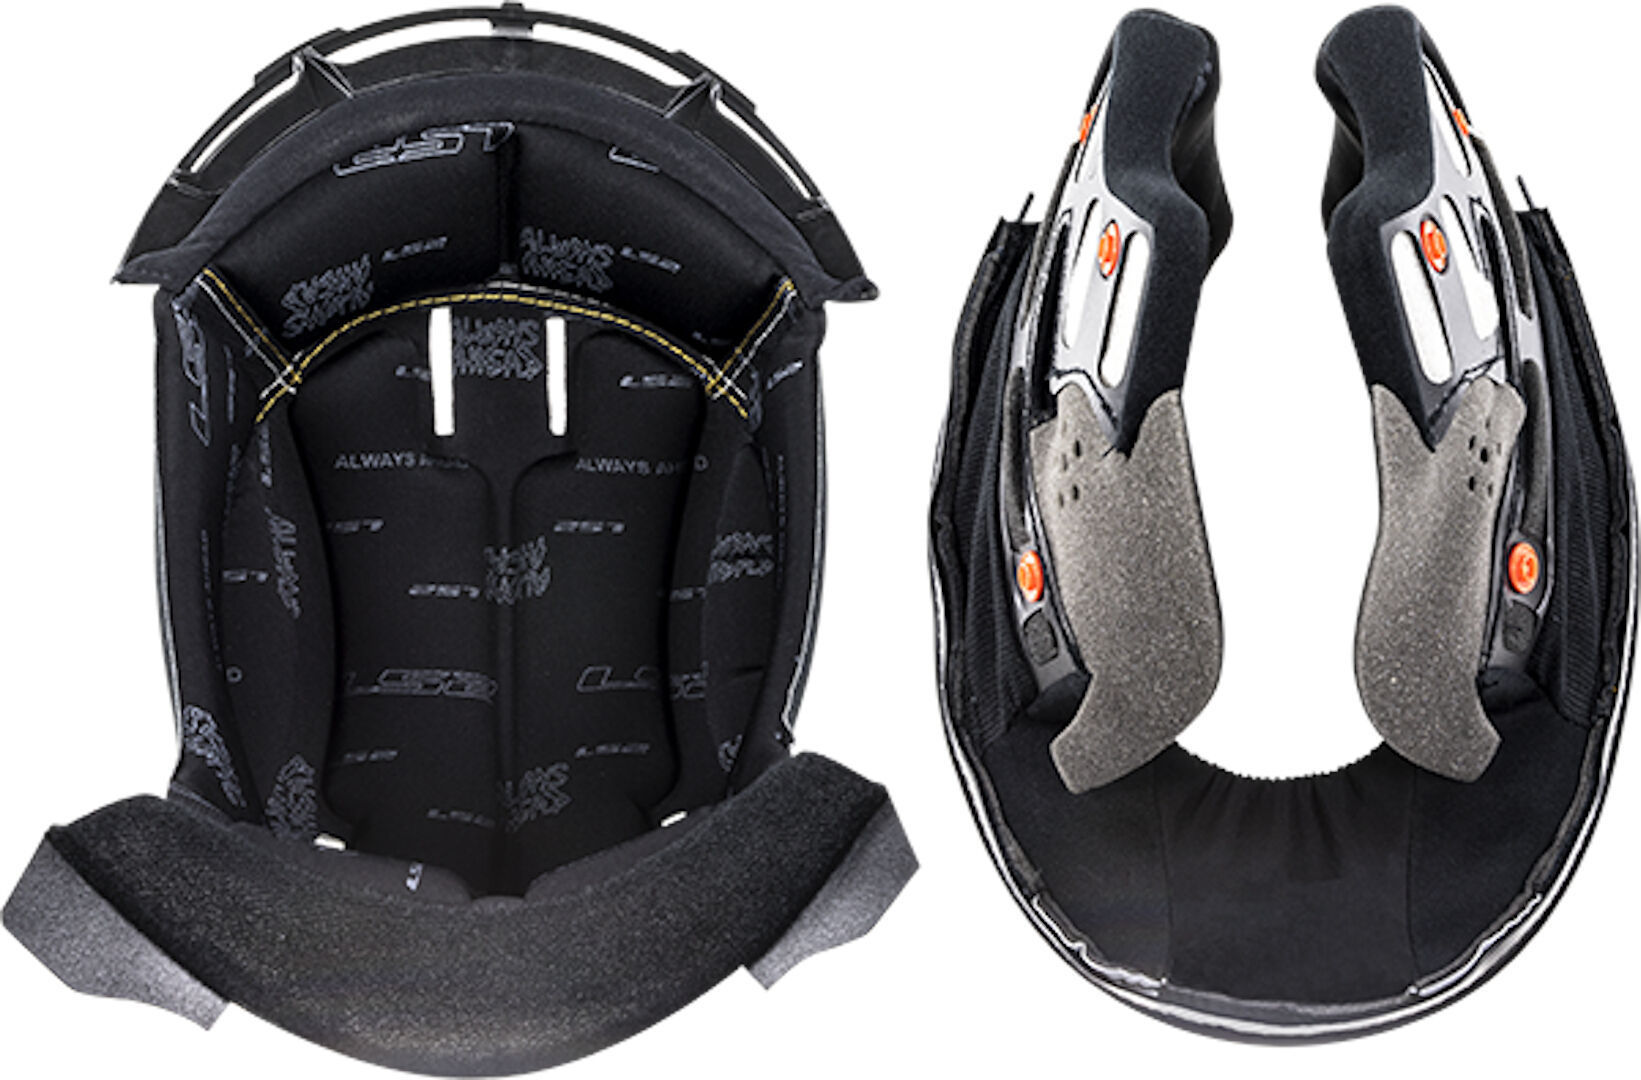 Подкладка LS2 FF399 Valiant внутренняя для шлема внутренняя подкладка для шлема защитная губка буферная набивка для мотоцикла велосипеда безопасный для езды удобный коврик для шлема